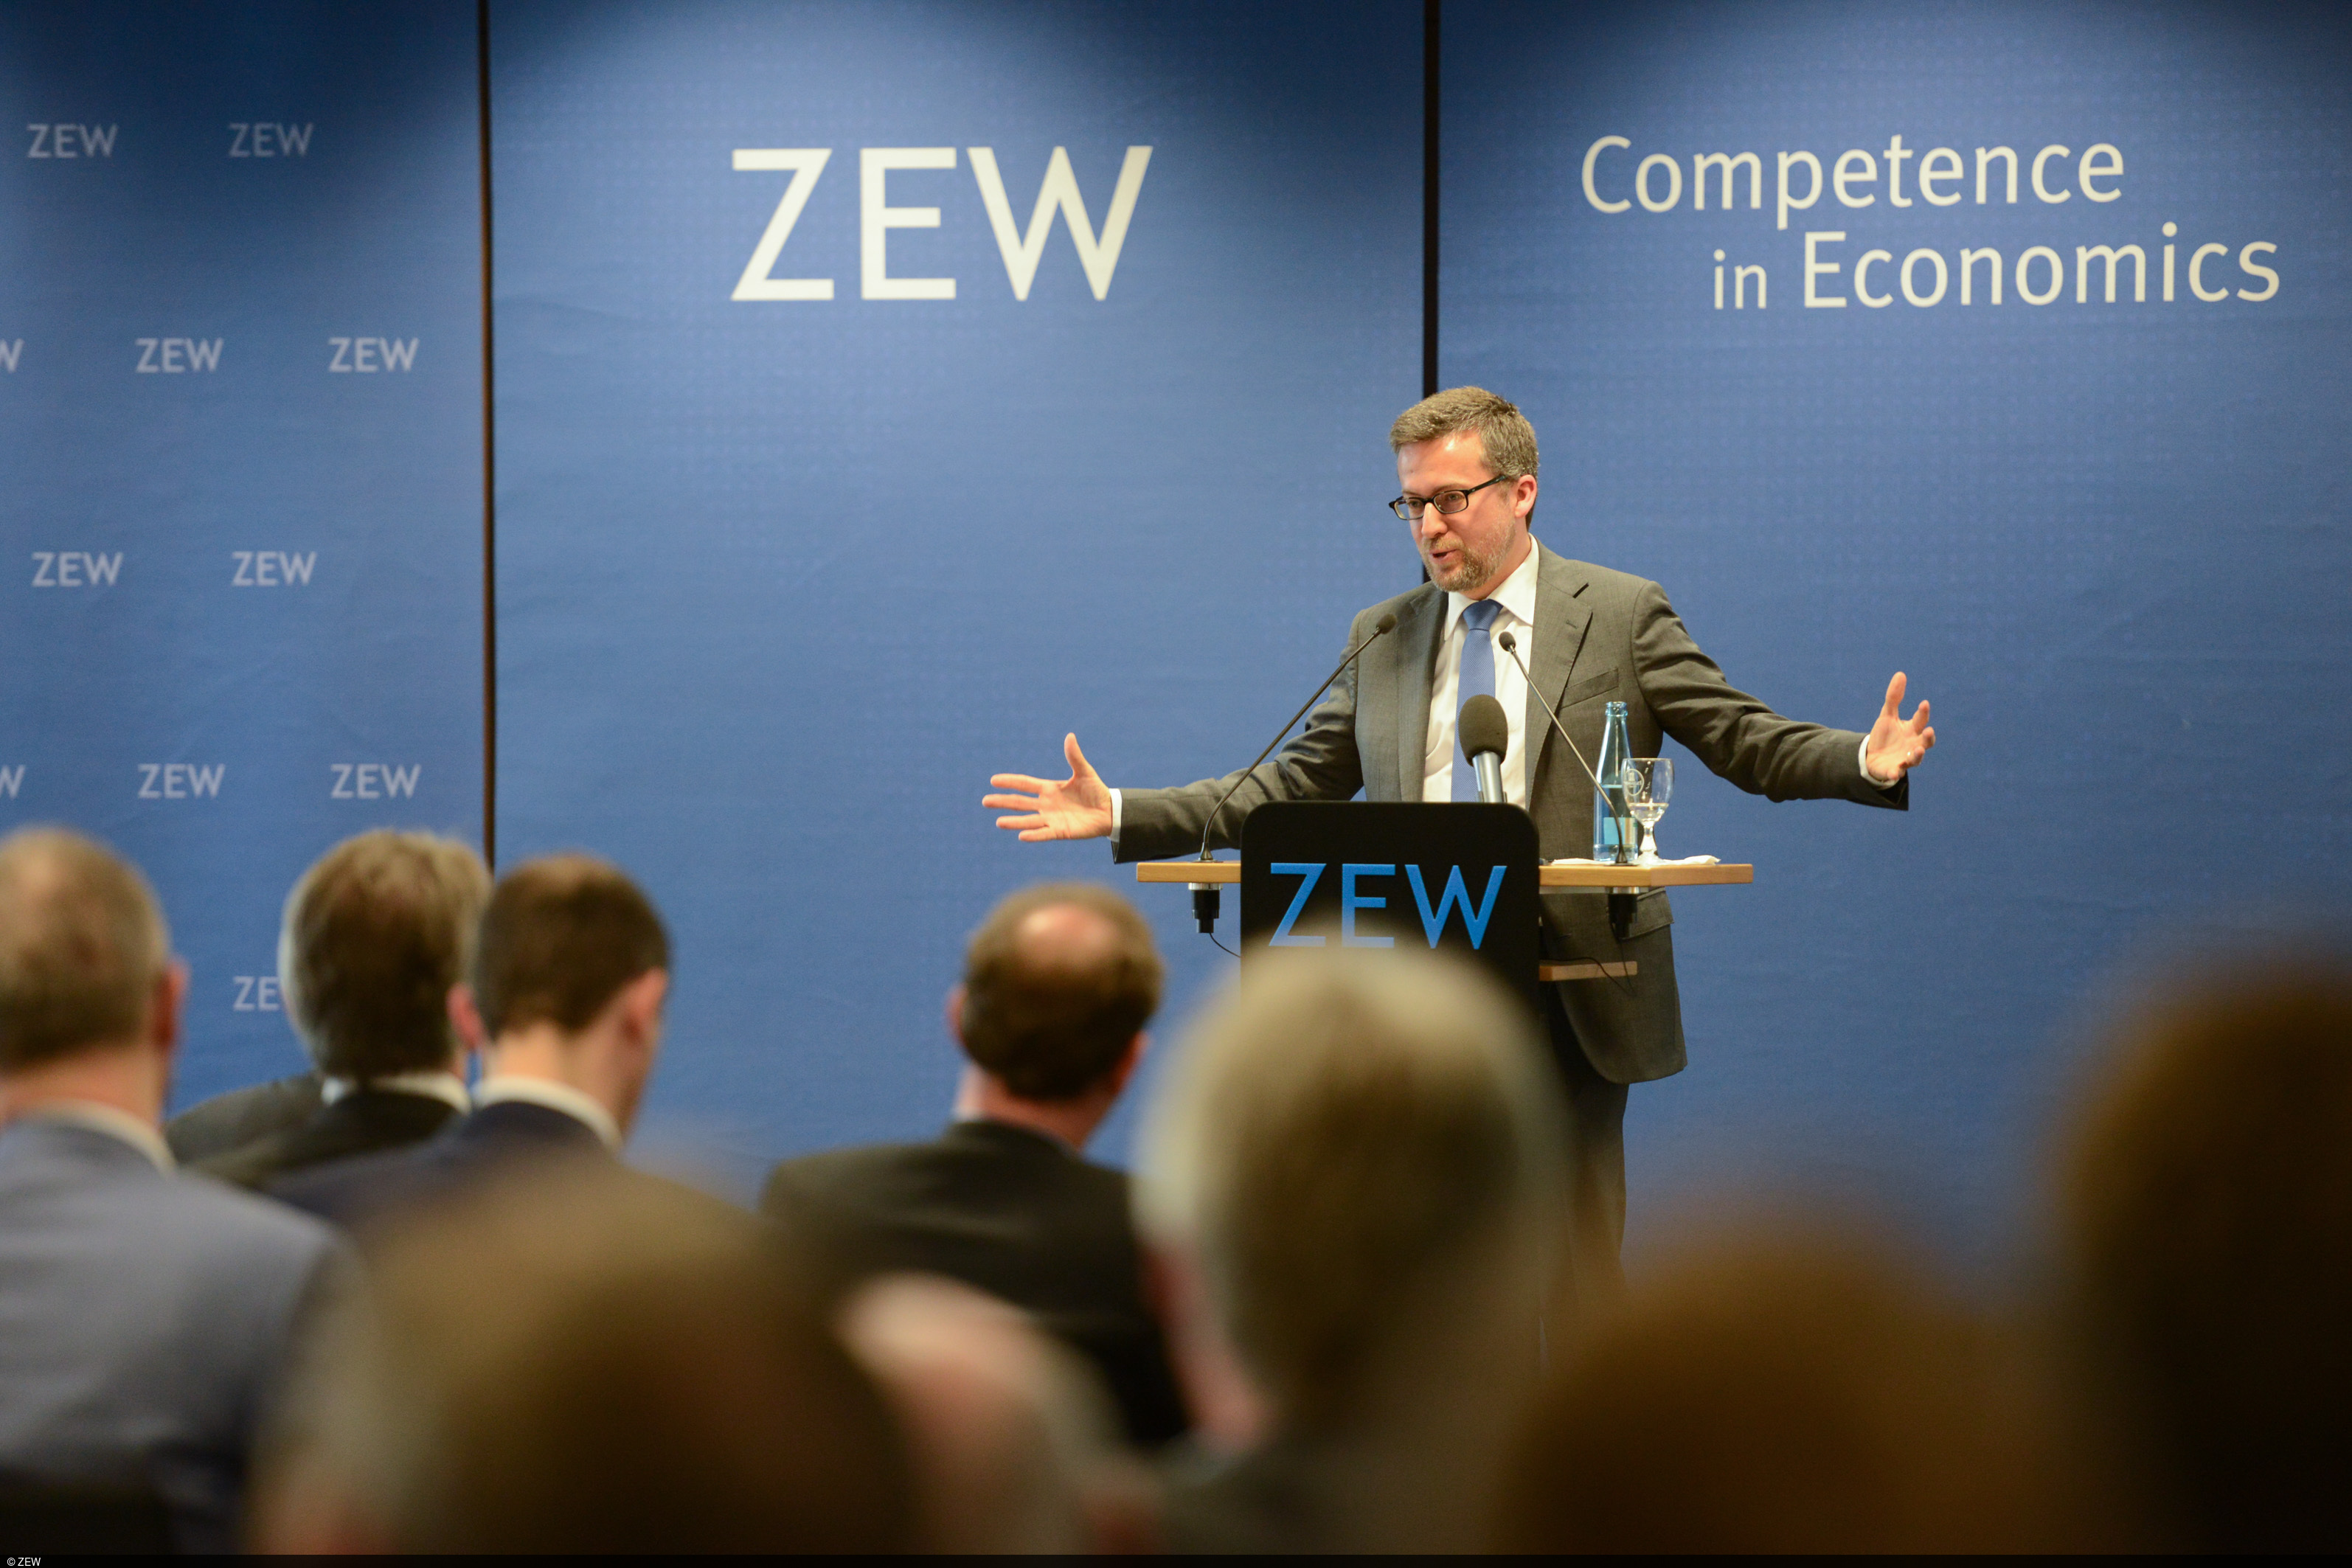 In seinem ZEW-Vortrag macht Carlos Moedas Vorschläge für eine innovativere Wirtschaft in der EU.